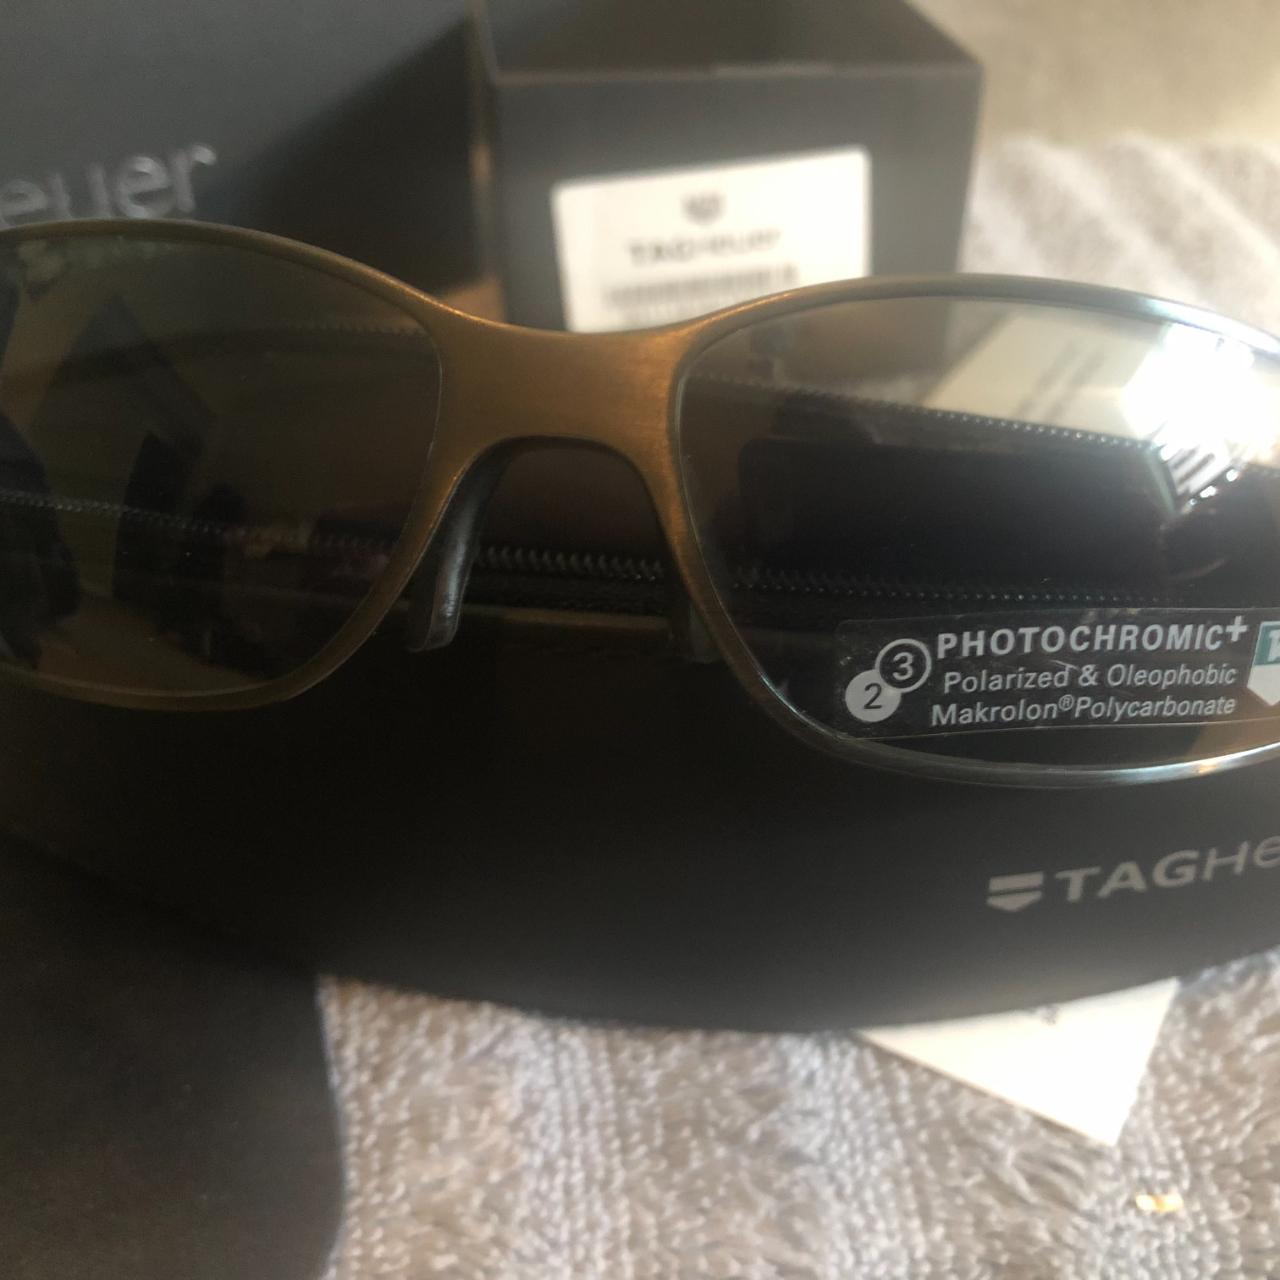 Product Image 2 - TAG Heuer Sunglasses -Gunmetal Black